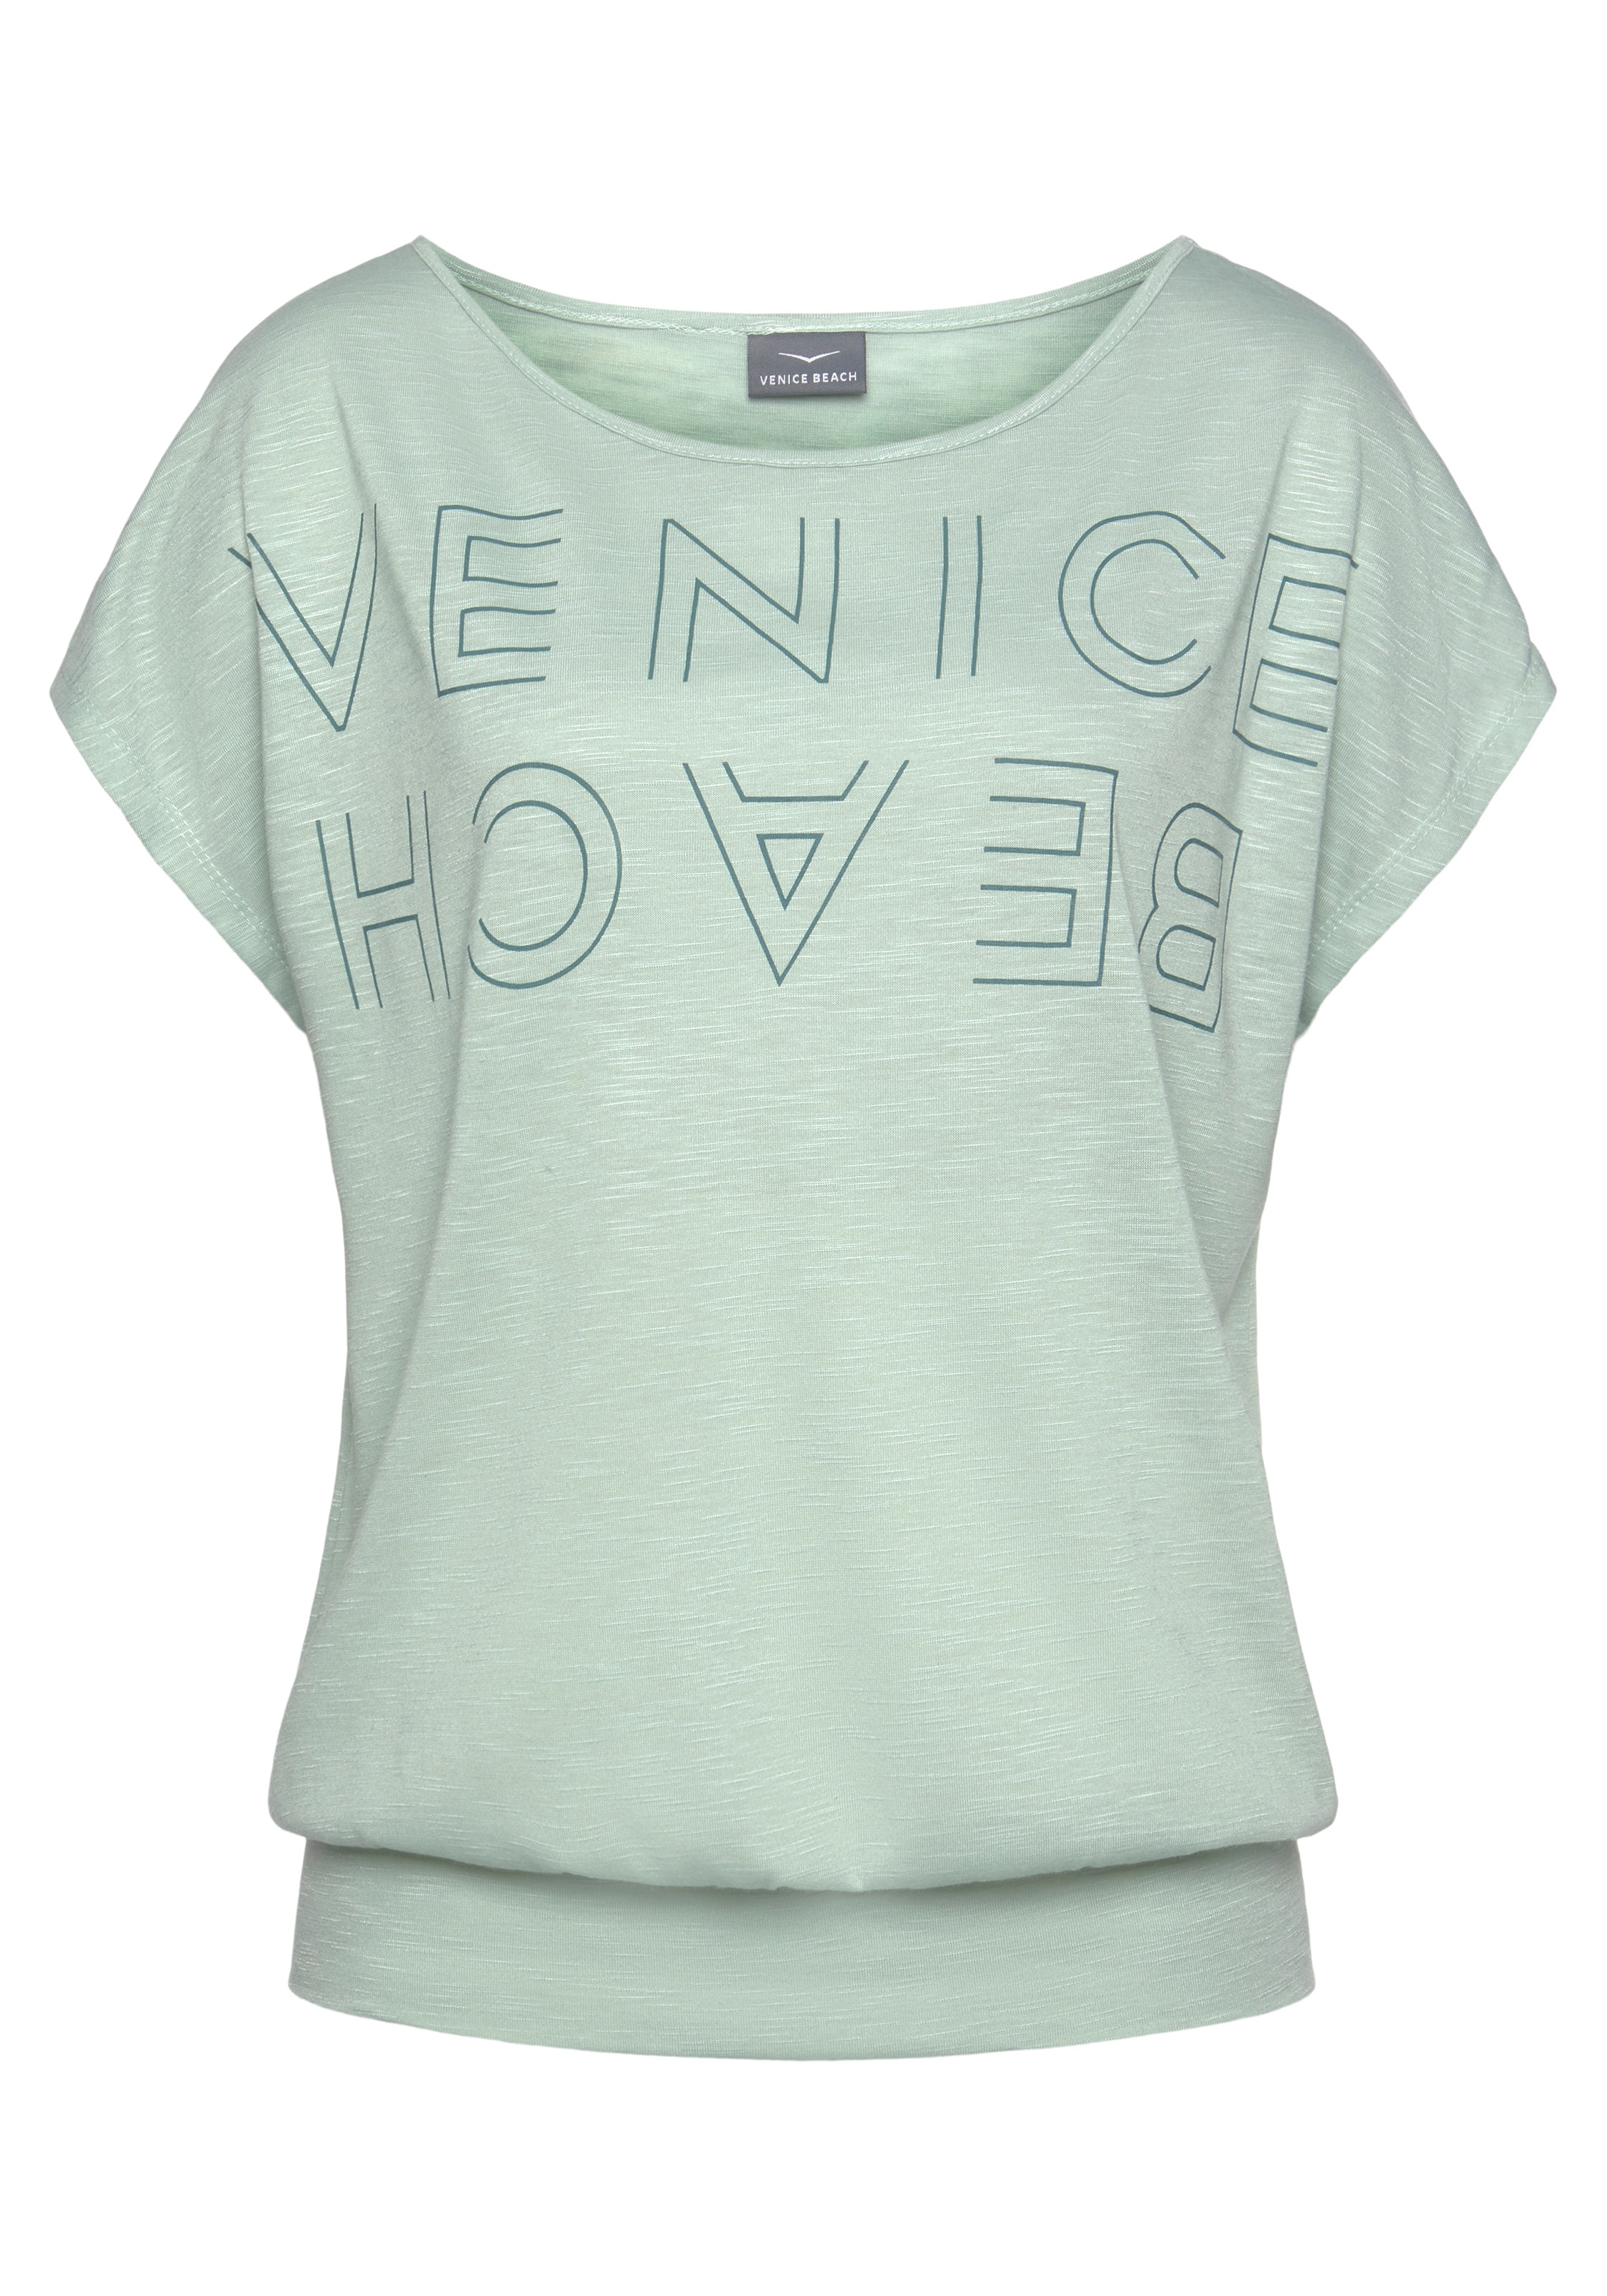 Venice Beach Rundhalsshirt, mit Logoprint, T-Shirt, sommerlich-sportlicher Look